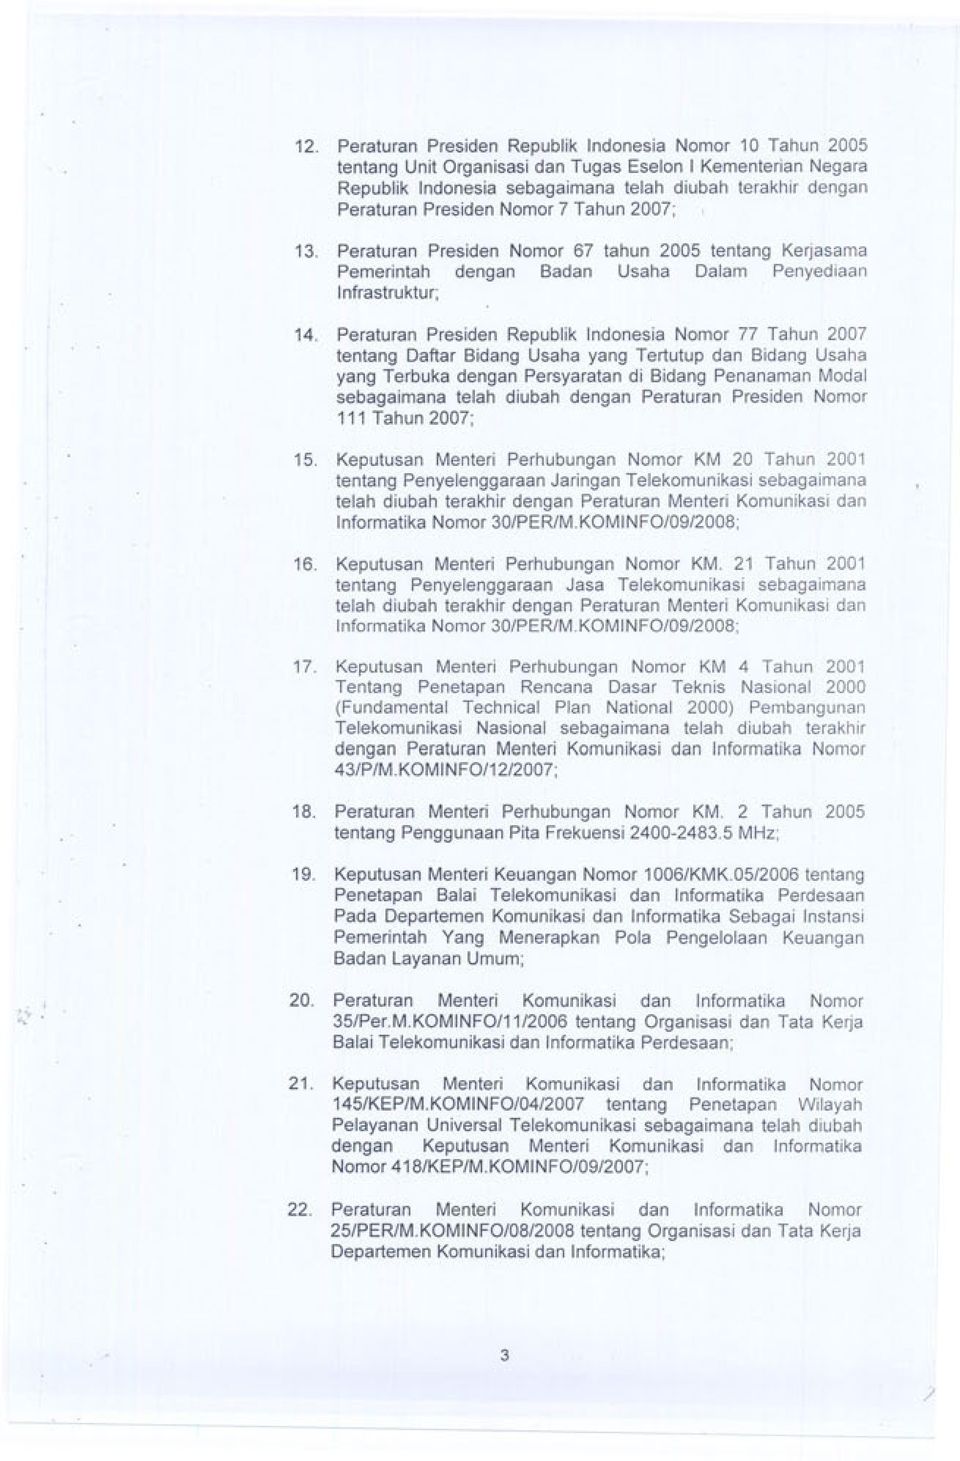 Peraturan Presiden Republik Indonesia Nomor 77 Tahun 2007 tentang Daftar Bidang Usaha yang Tertutup dan Bidang Usaha yang Terbuka dengan Persyaratan di Bidang Penanaman Modal sebagaimana telah diubah